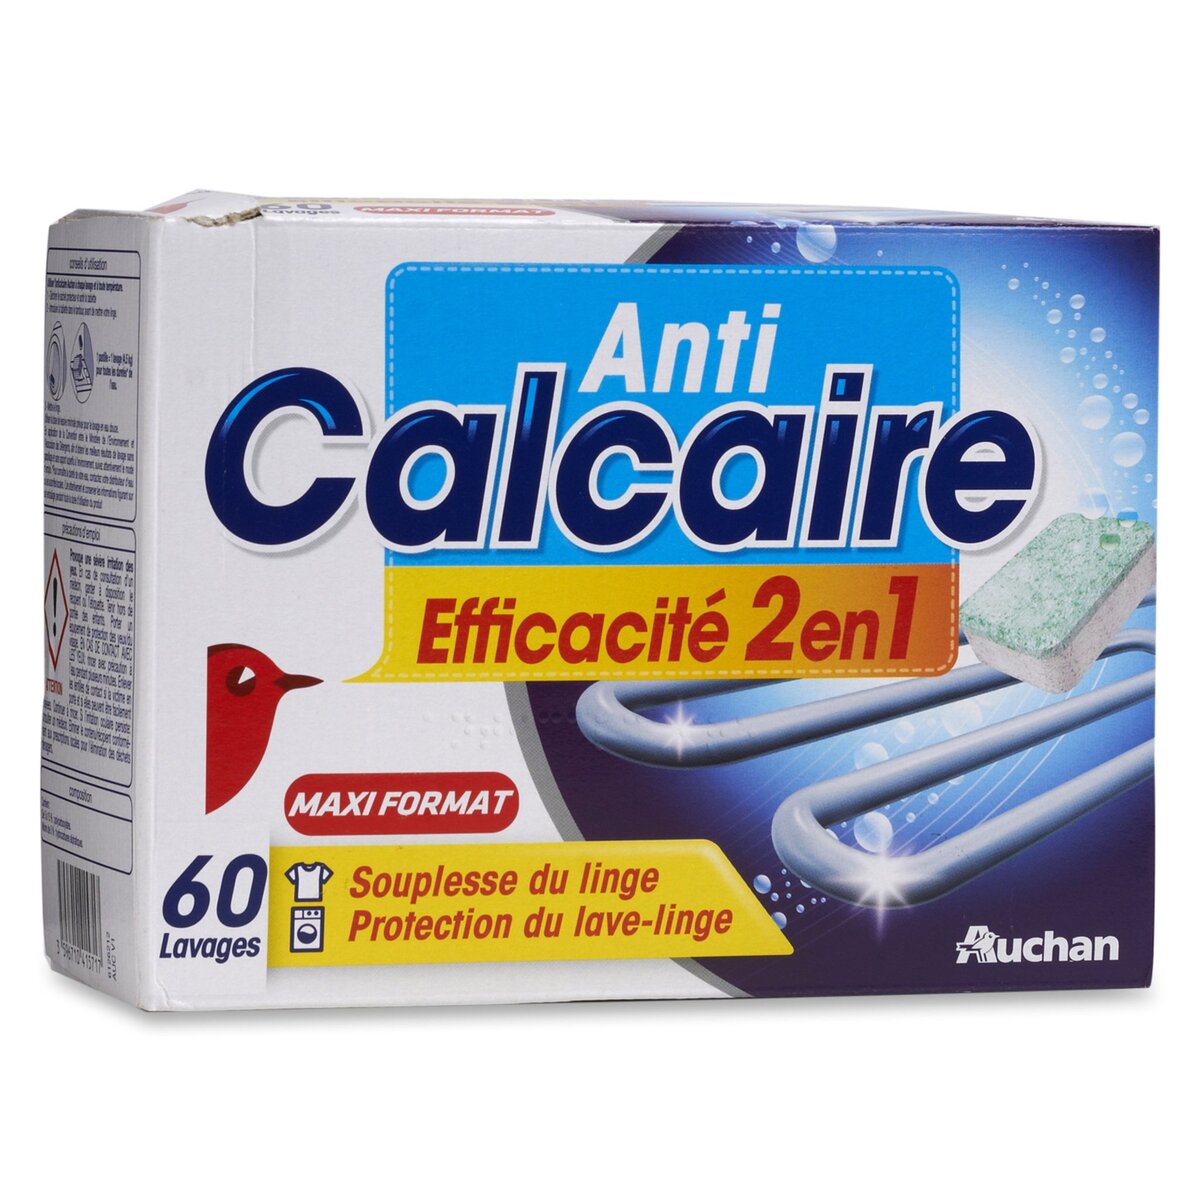 AUCHAN Auchan Pastilles anti-calcaire lave-linge x60 60 lavages 60 pastilles